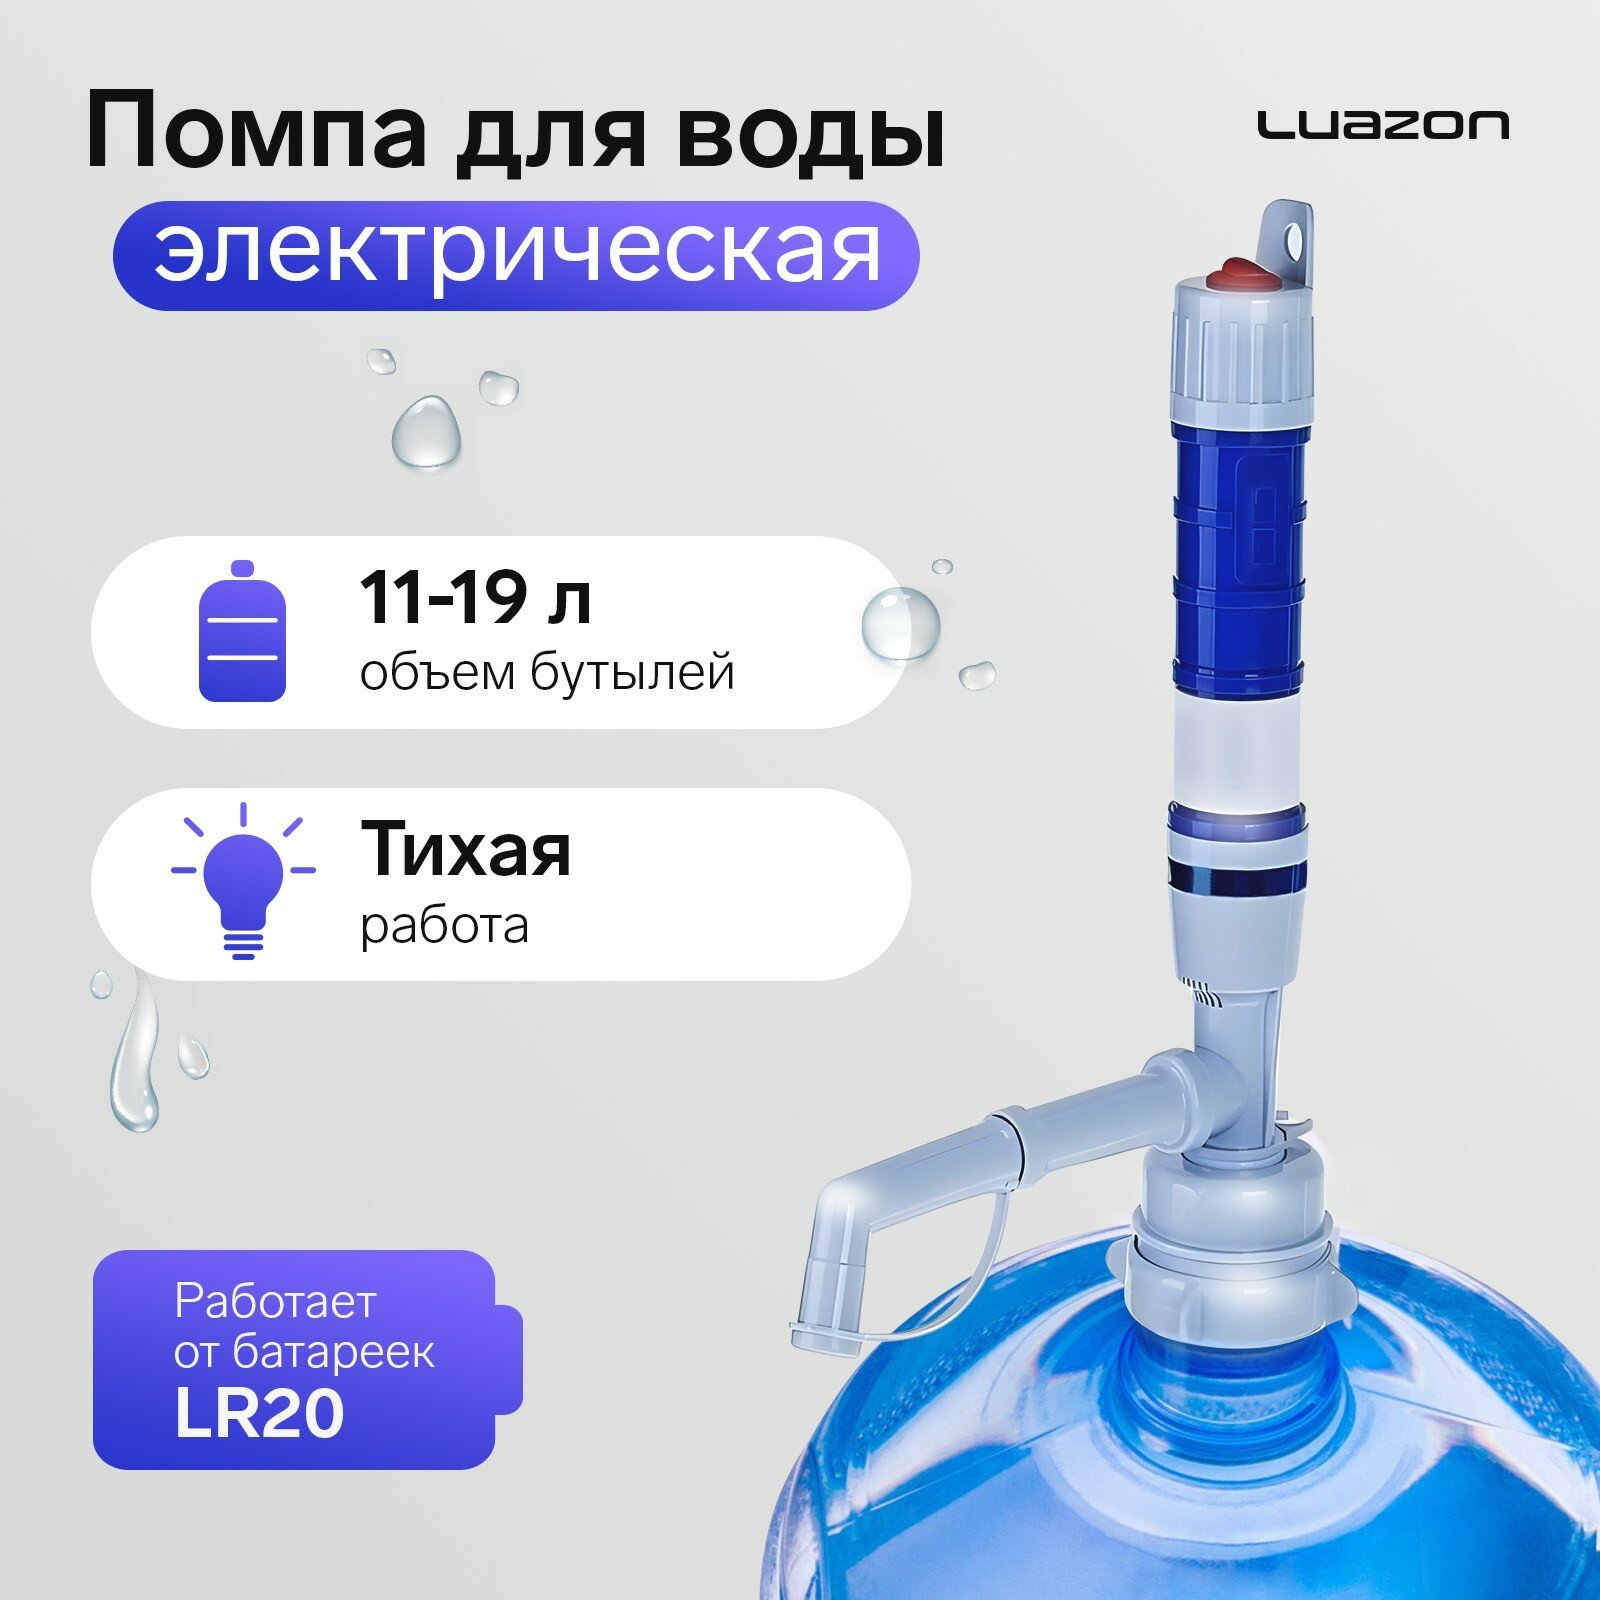 Помпа для воды Luazon LWP-01, электрическая, 5 Вт, 1.2 л/мин, от батареек R20